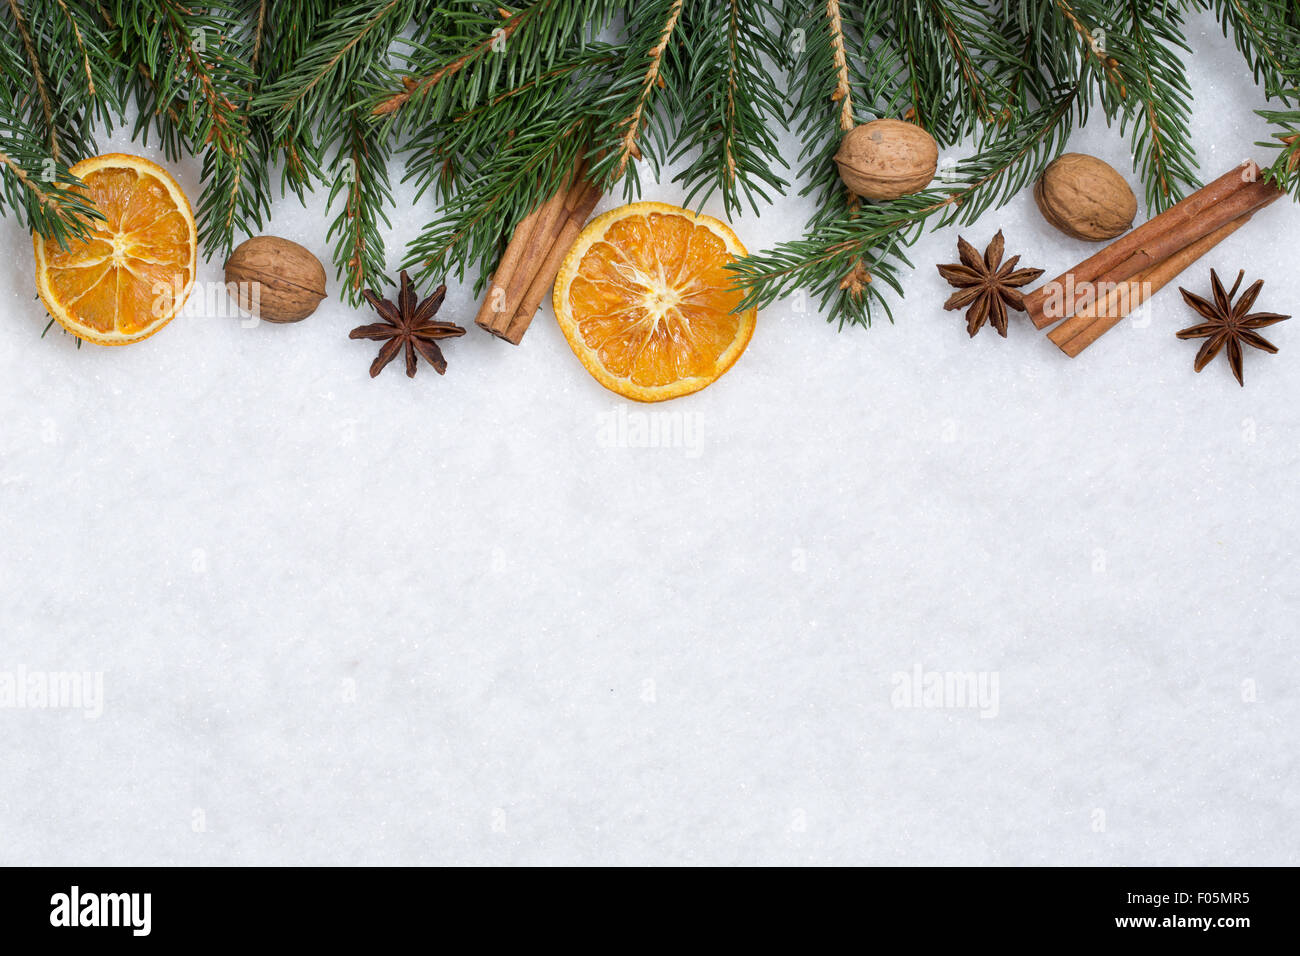 Sfondo di natale decorazione con rami di abete, frutti di colore arancione e neve Foto Stock